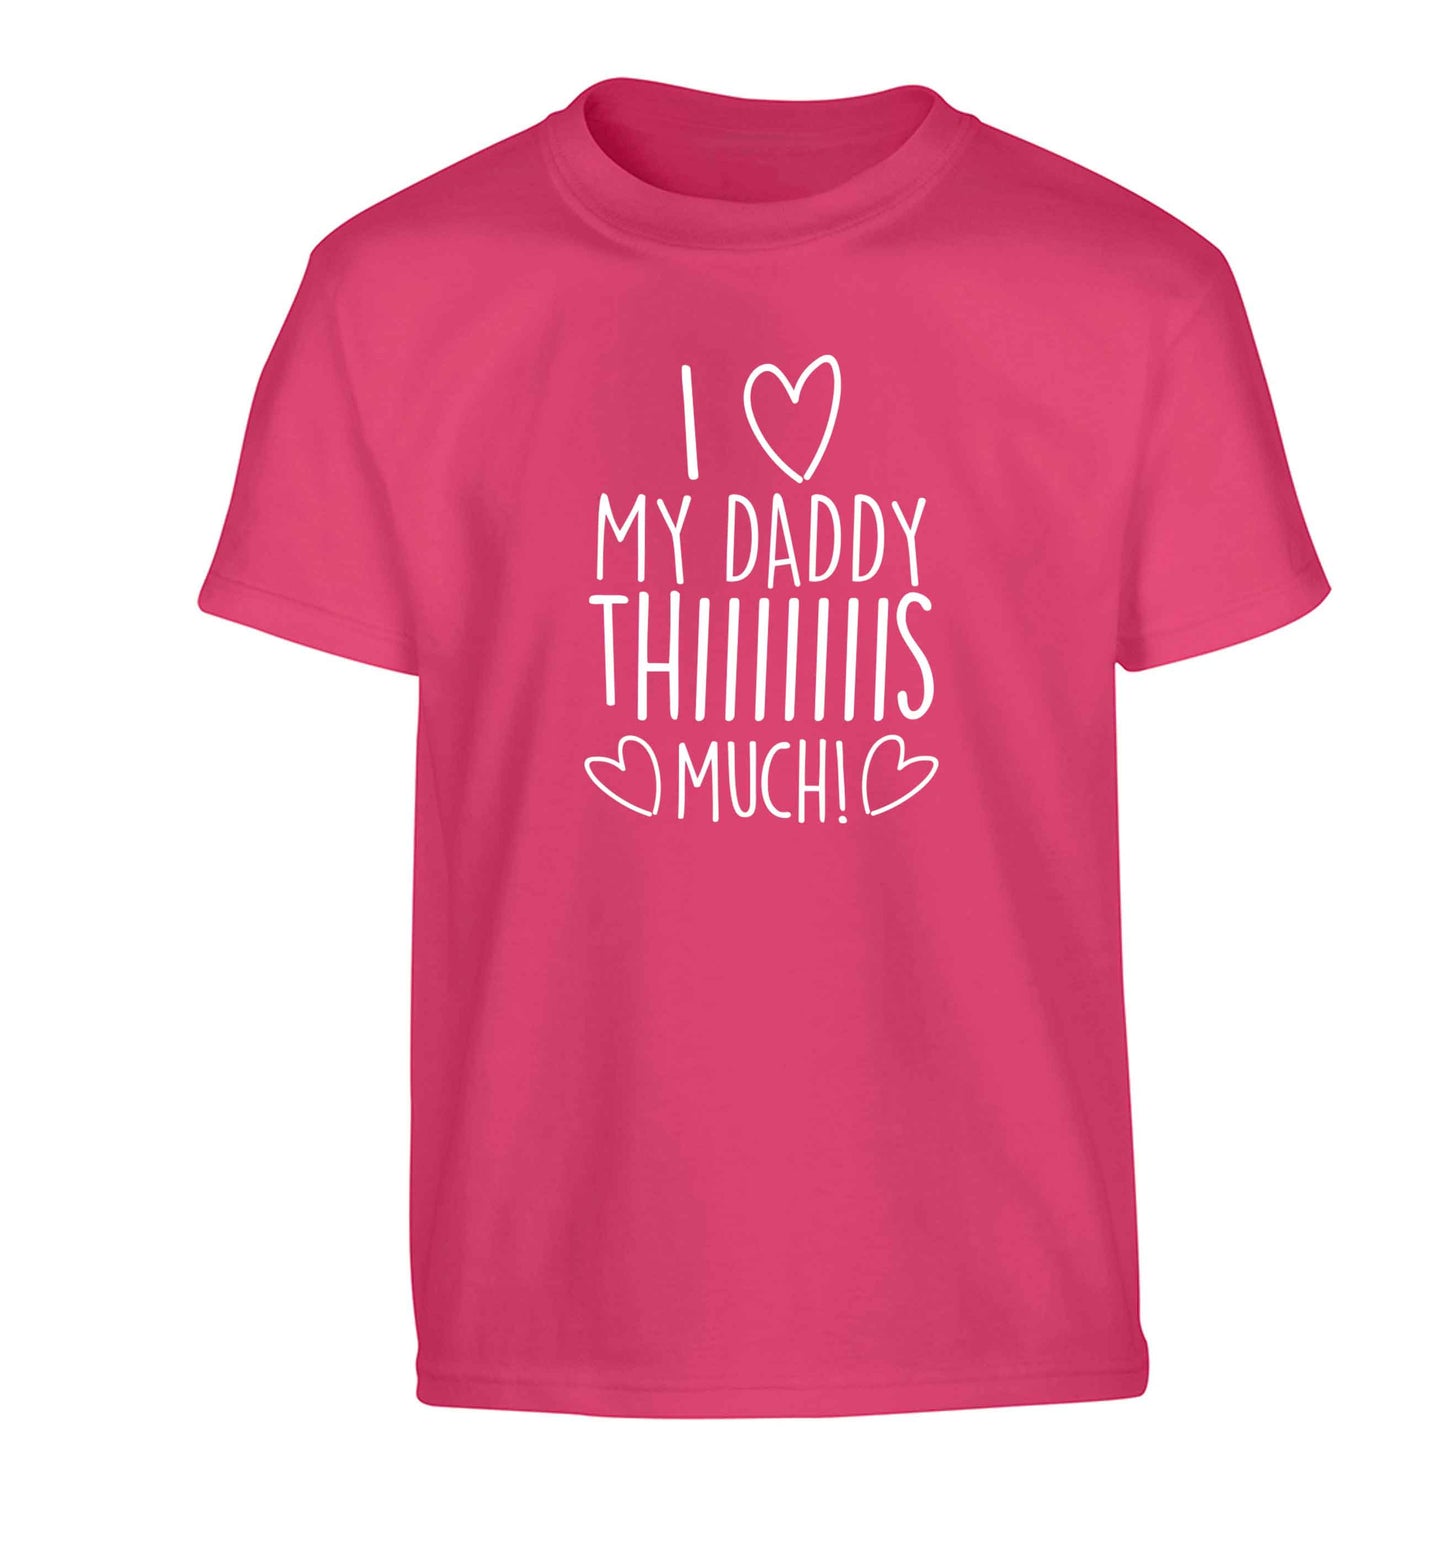 I love my daddy thiiiiis much! Children's pink Tshirt 12-13 Years